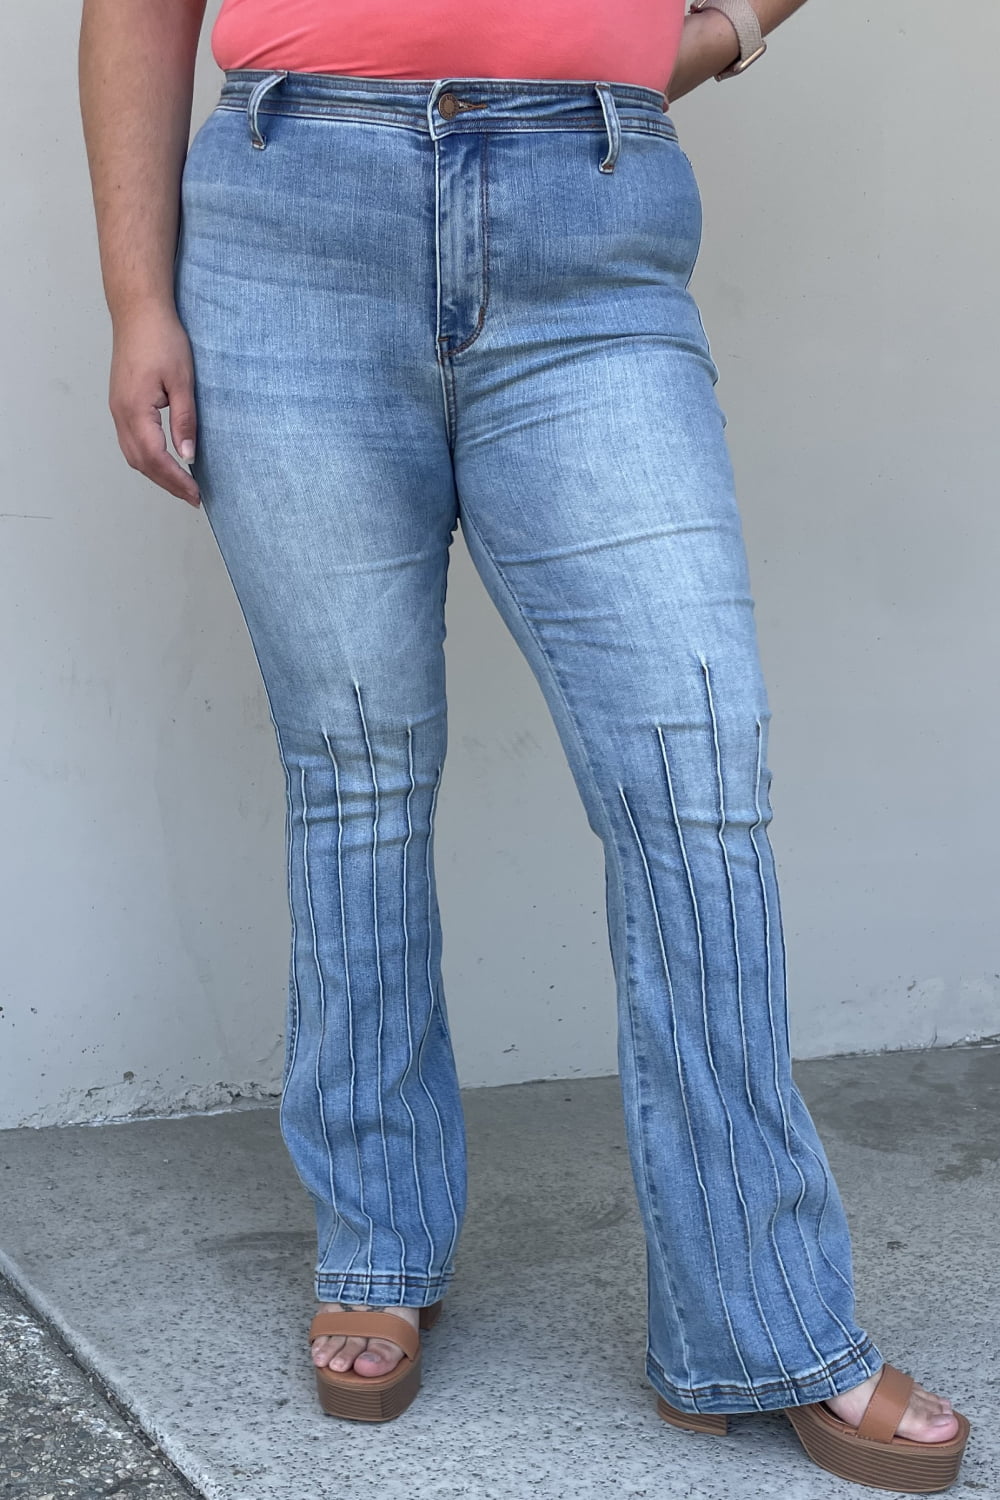 Judy Blue Vivian Full Size High Waisted Bootcut Jeans